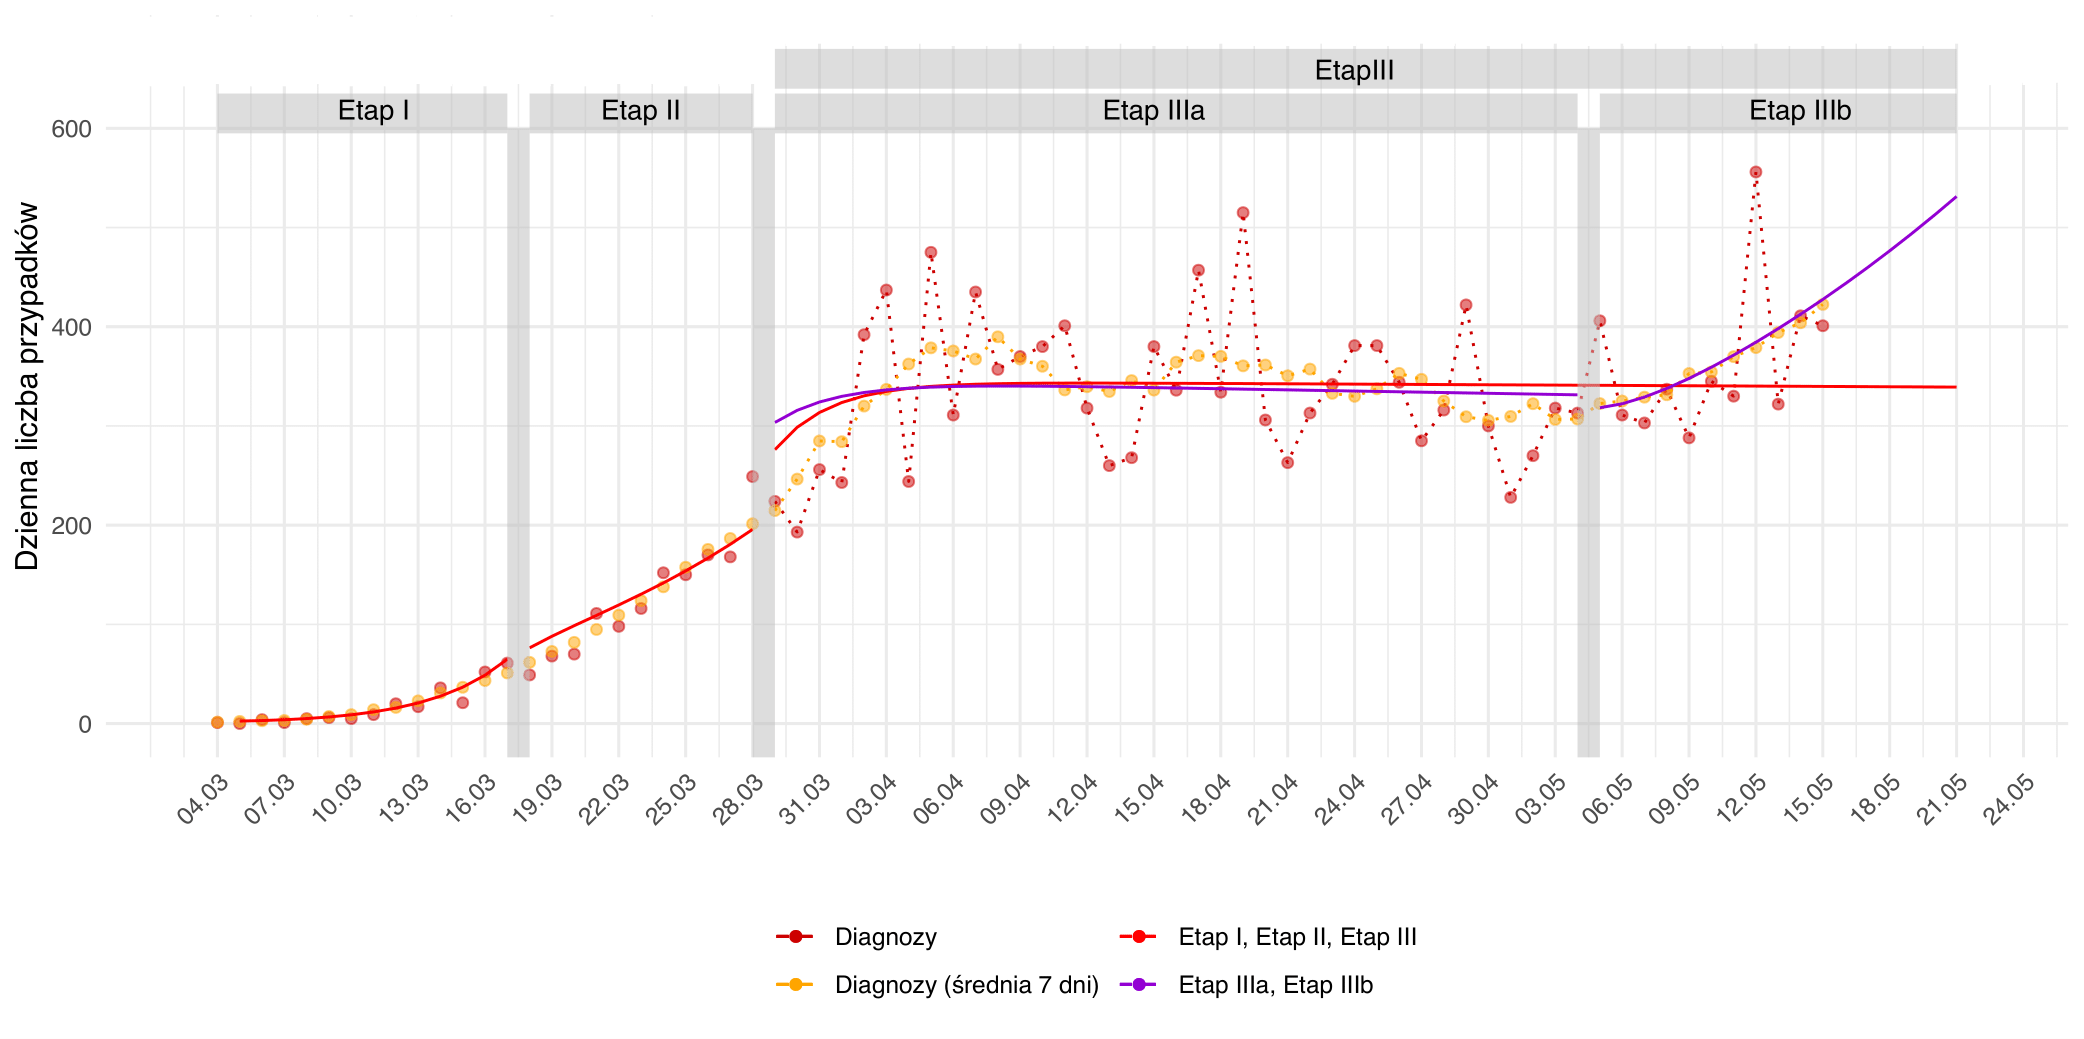 Prognozowana dzienna liczba przypadków na kolejnych etapach epidemii. Czerwone punkty odpowiadają dziennej liczbie diagnozowanych przypadków. Punkty pomarańczowe są średnią na dany dzień w tygodniowym oknie czasowym. Czerwona ciągła linia obrazuje przebieg predykcji dla trzech etapów epidemii w Polsce, ograniczonymi przez pionowe szare pasy odpowiadające wprowadzeniu lub zdjęciu restrykcji. Dla rozróżnienia etapów IIIa i IIIb fioletową linią zaznaczono predykcje z uwzględnieniem pierwszej fazy znoszenia restrykcji.